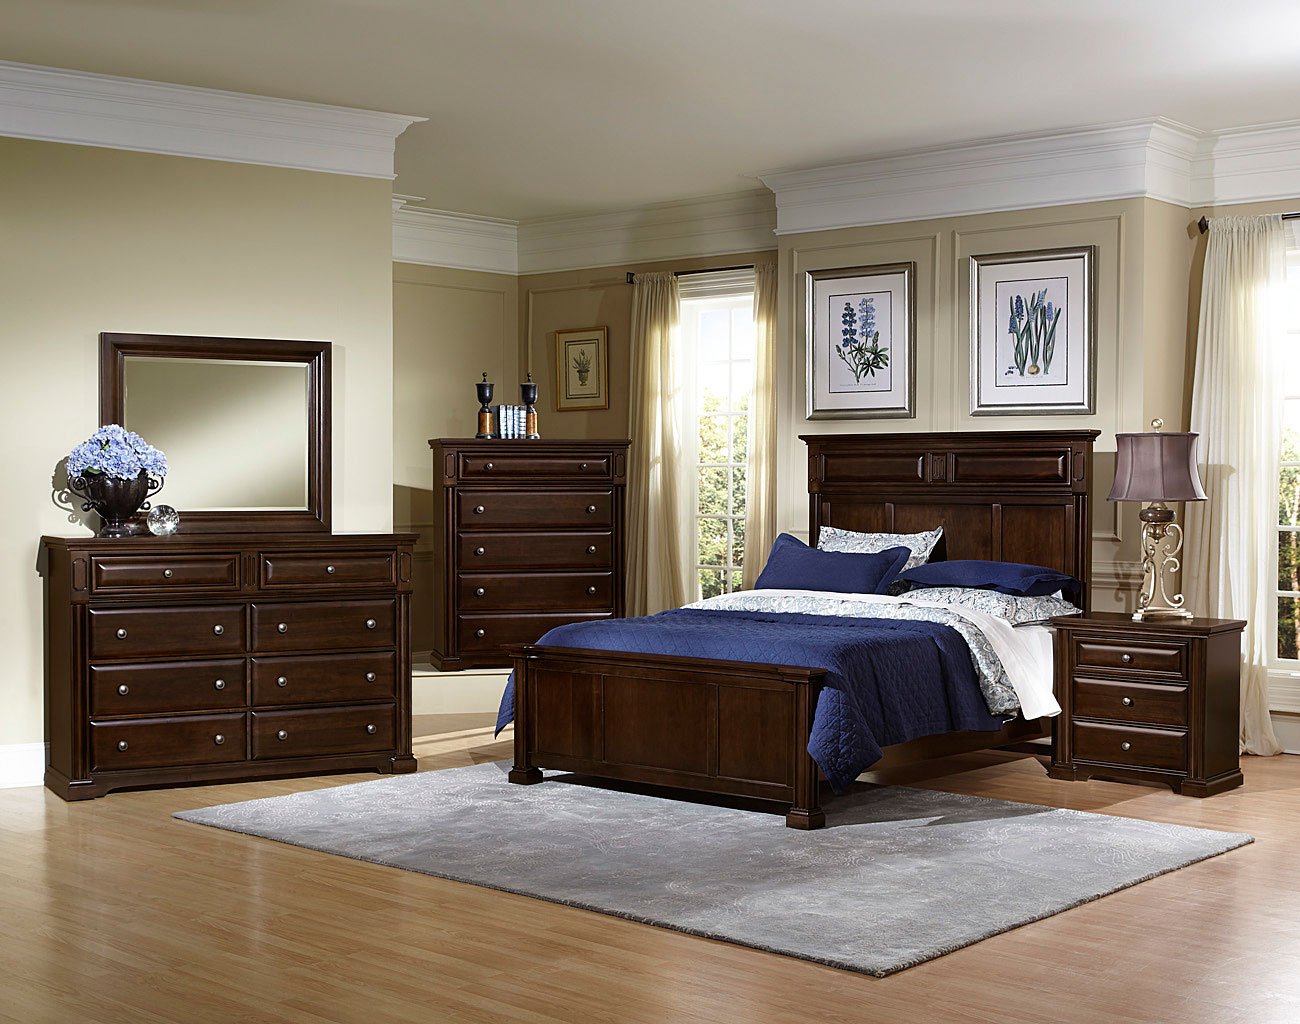 knightsbridge bedroom furniture range